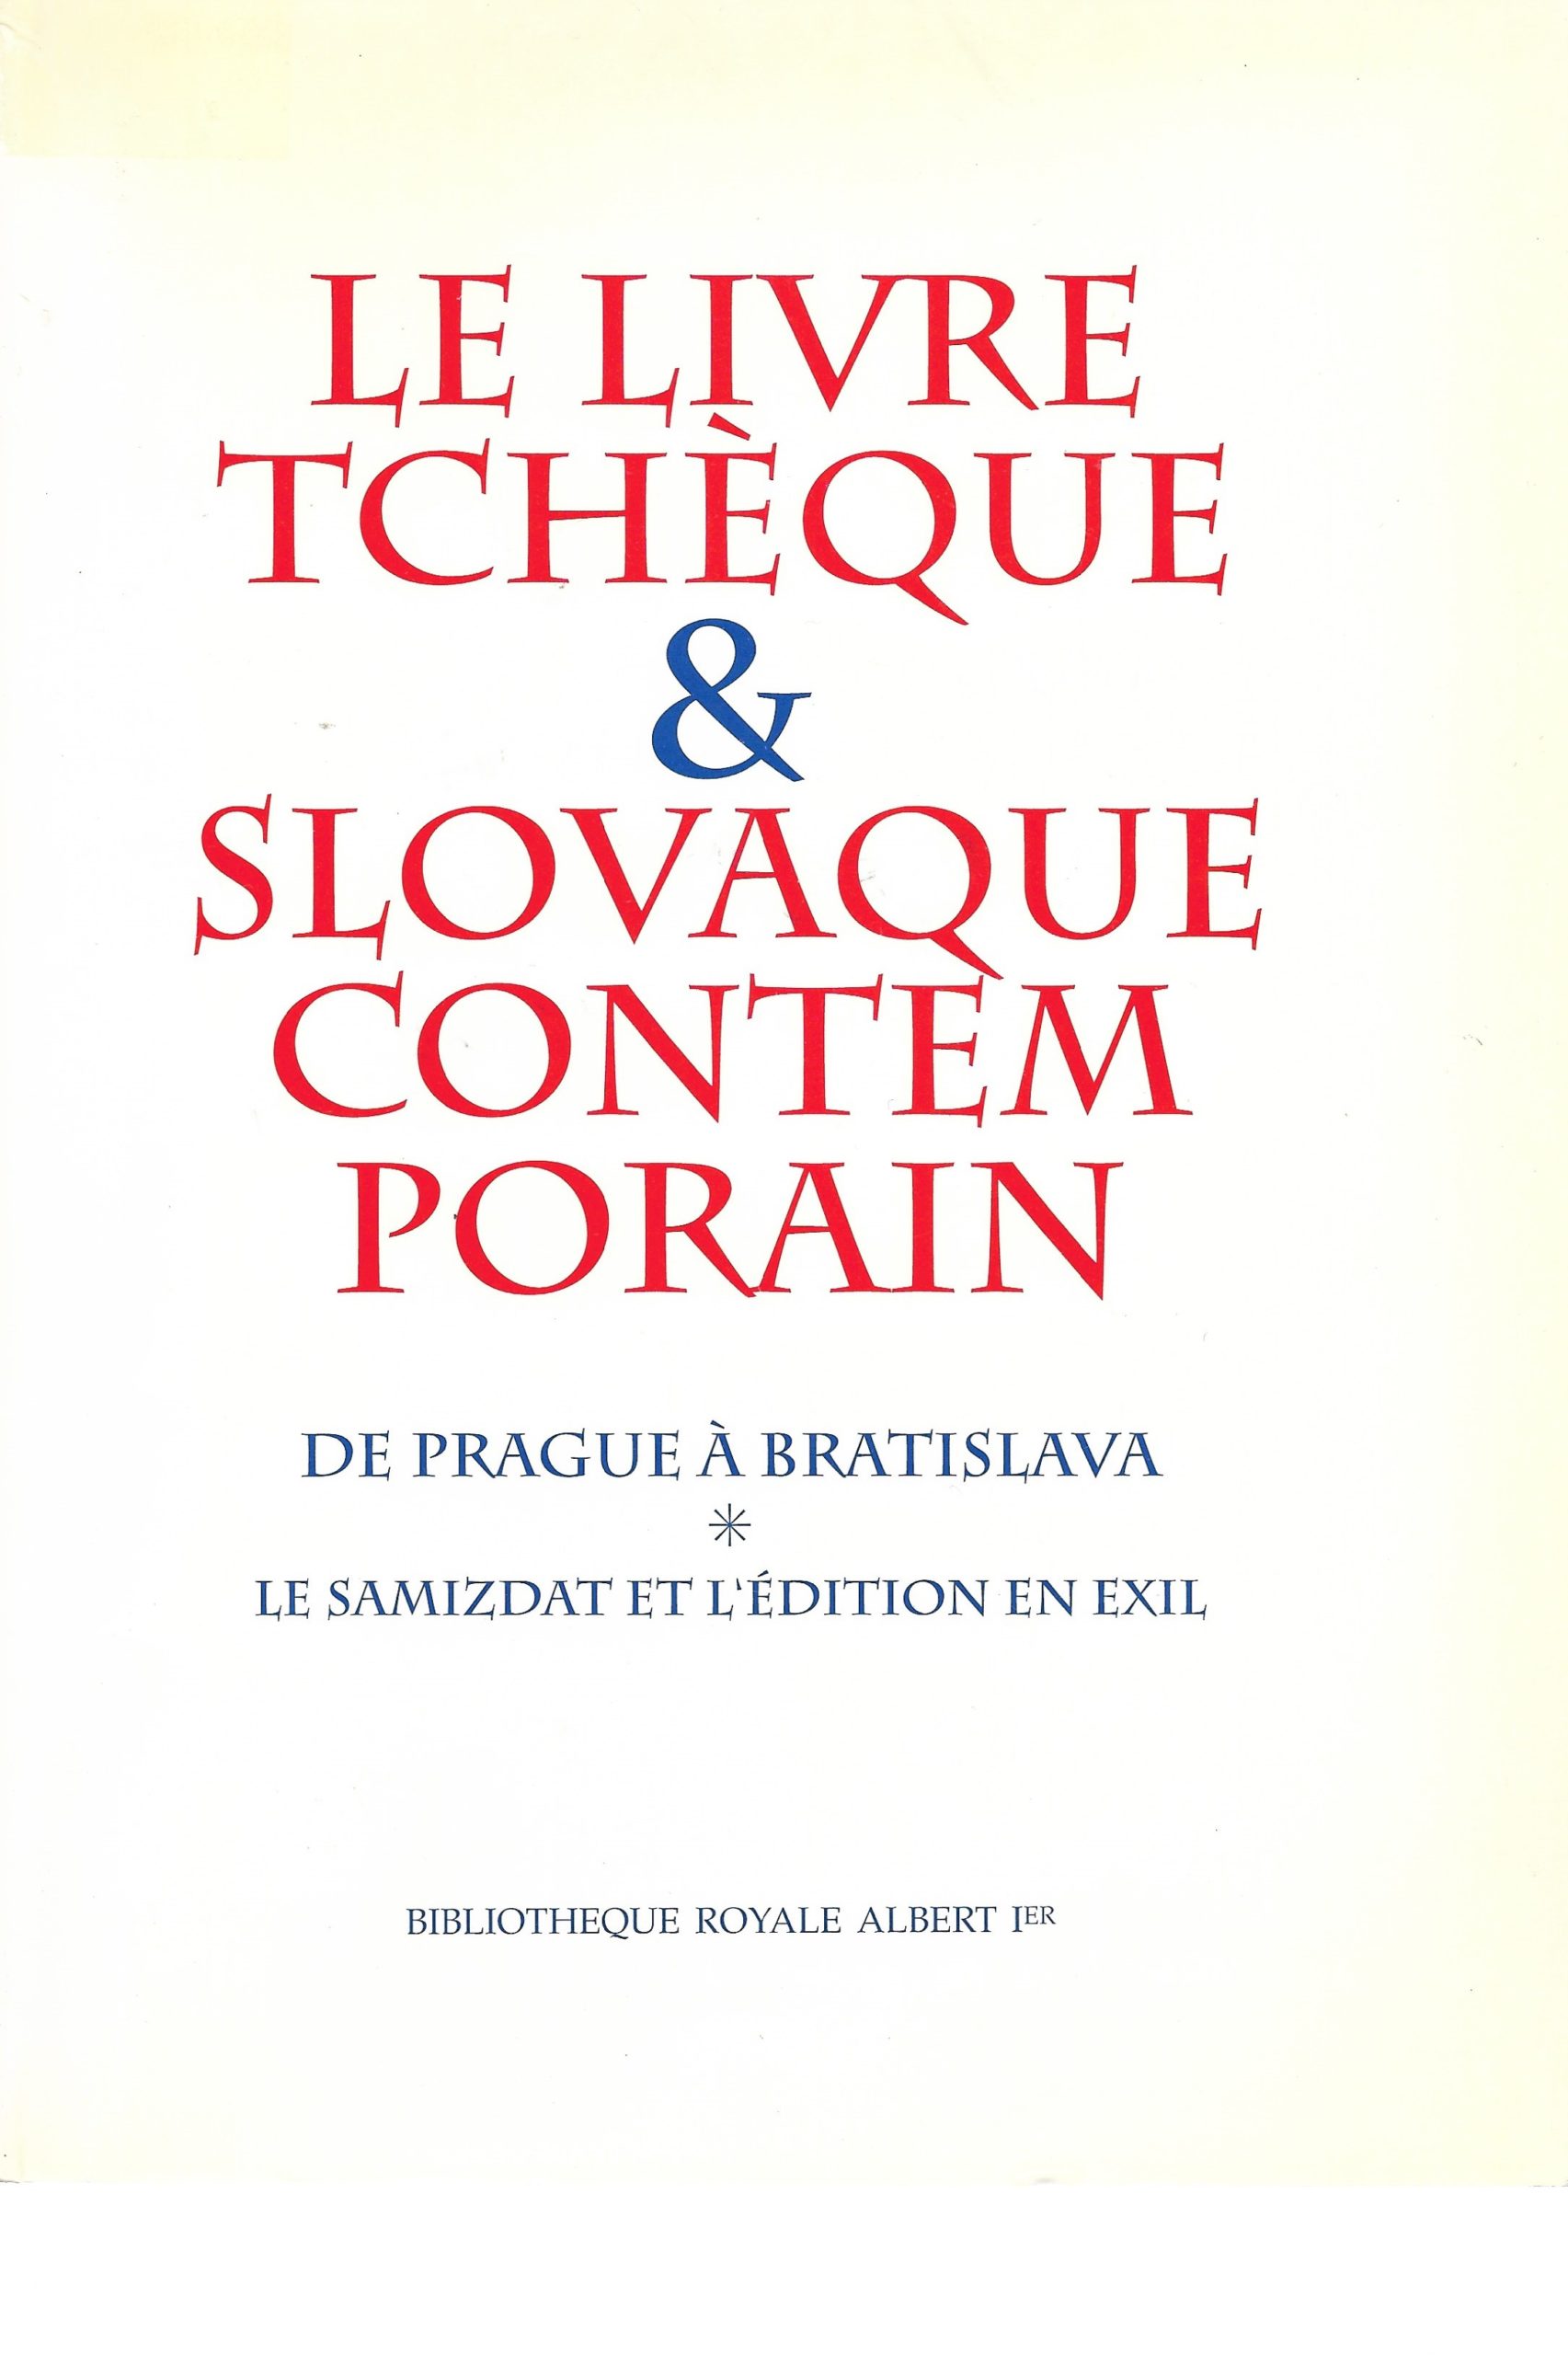 14. HOREMANS Jean-M., « Le livre tchèque et slovaque contemporain. De Prague à Bratislava », Bruxelles, Bibliothèque royale Albert Ier, 1993, 184 p. + 16 ill., 5 €